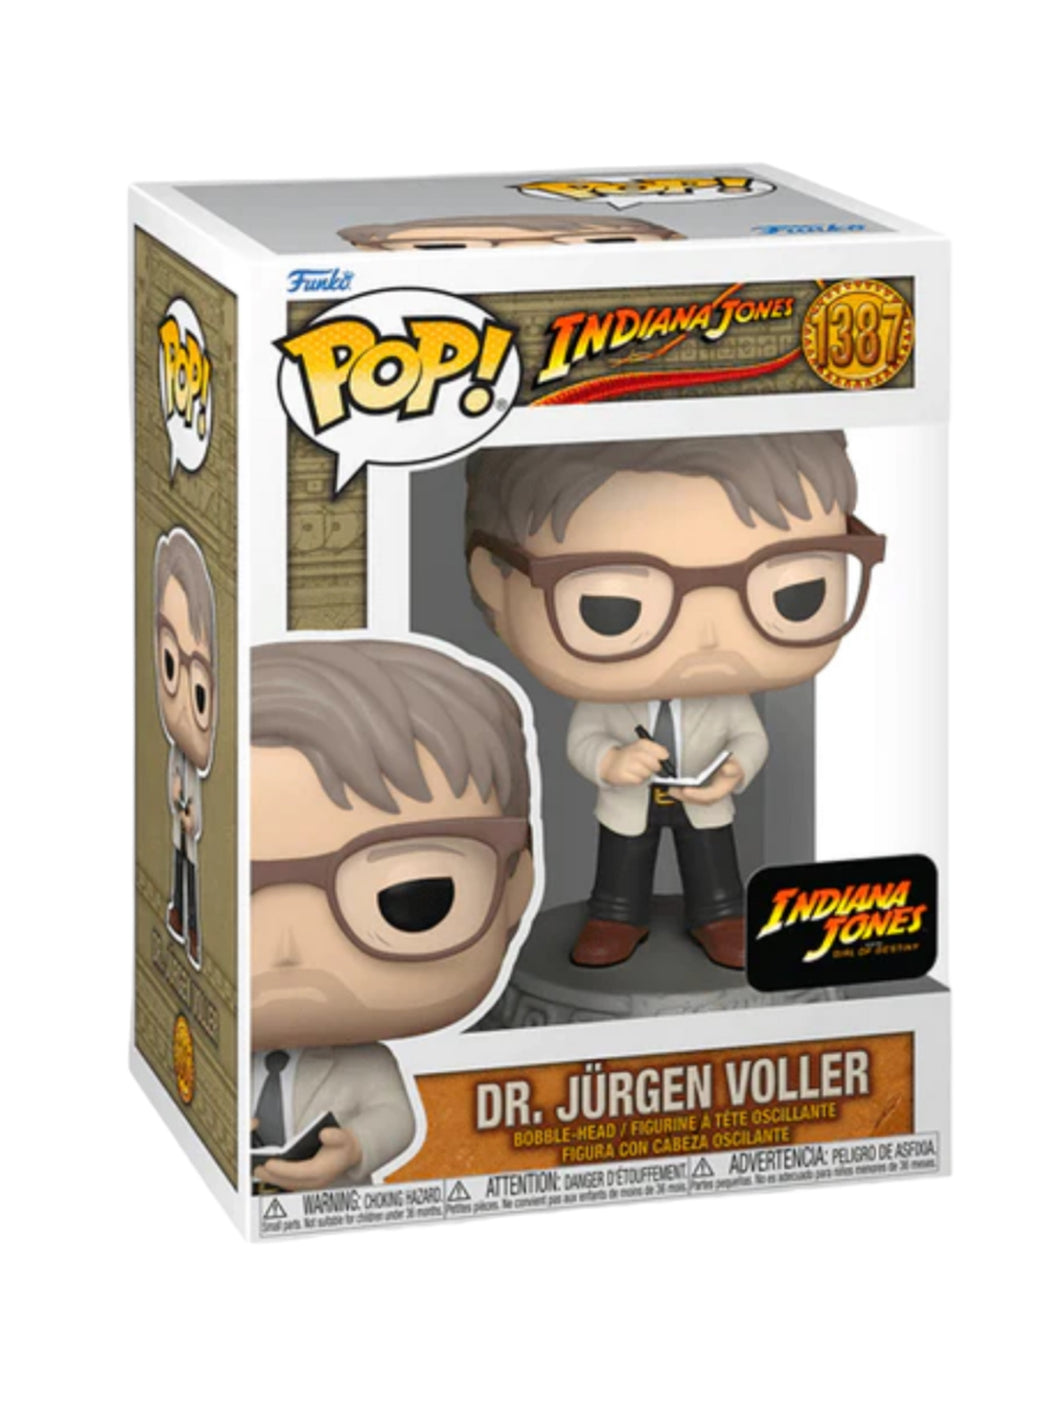 Indiana Jones #1387 Dr. Jurgen Voller Funko Pop